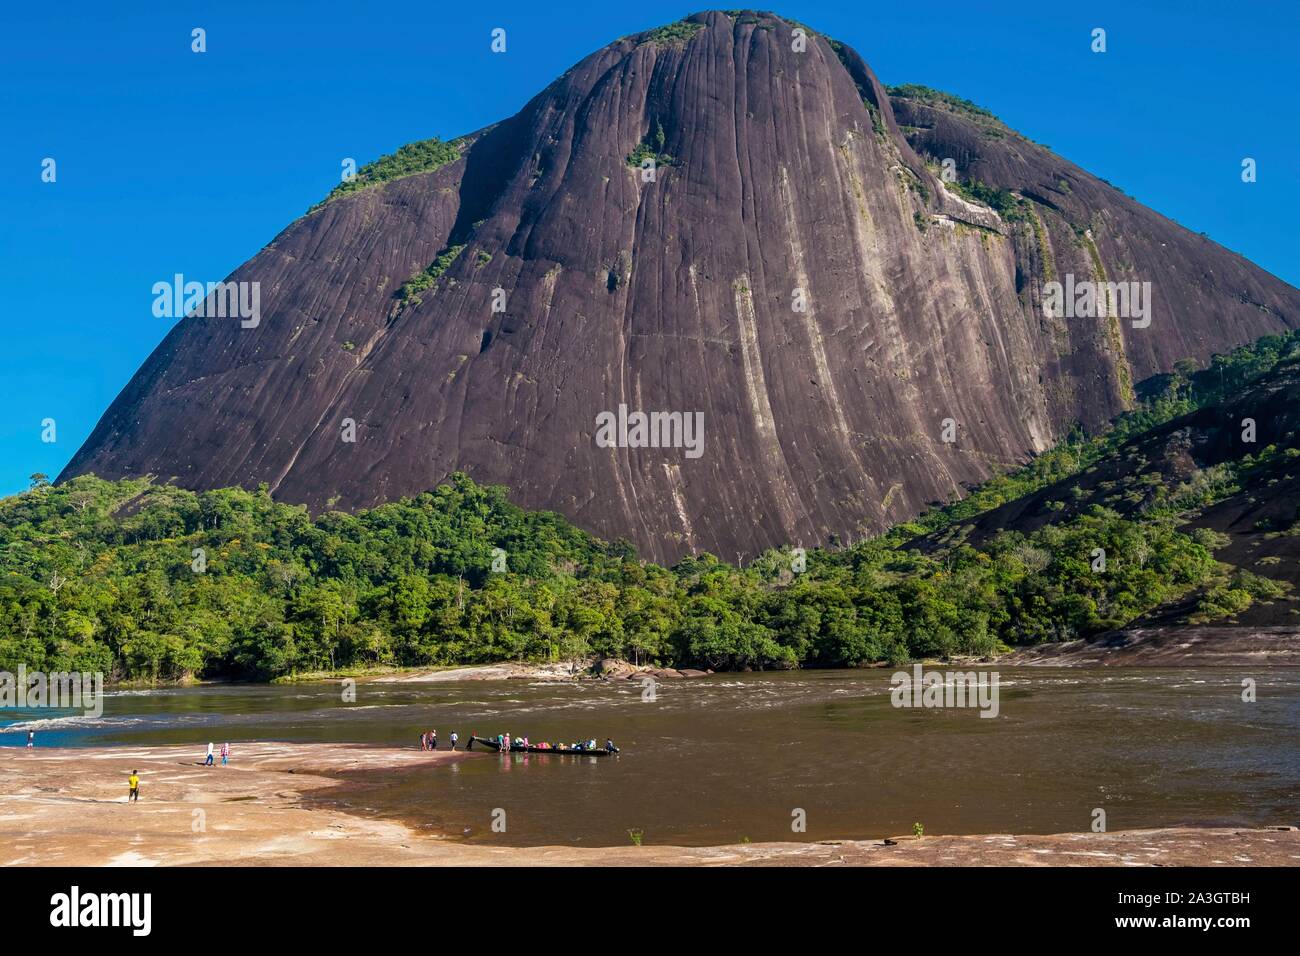 Colombia, Guainia, Inirida, Cerros de Mavicure, Pajarito cliff Stock Photo